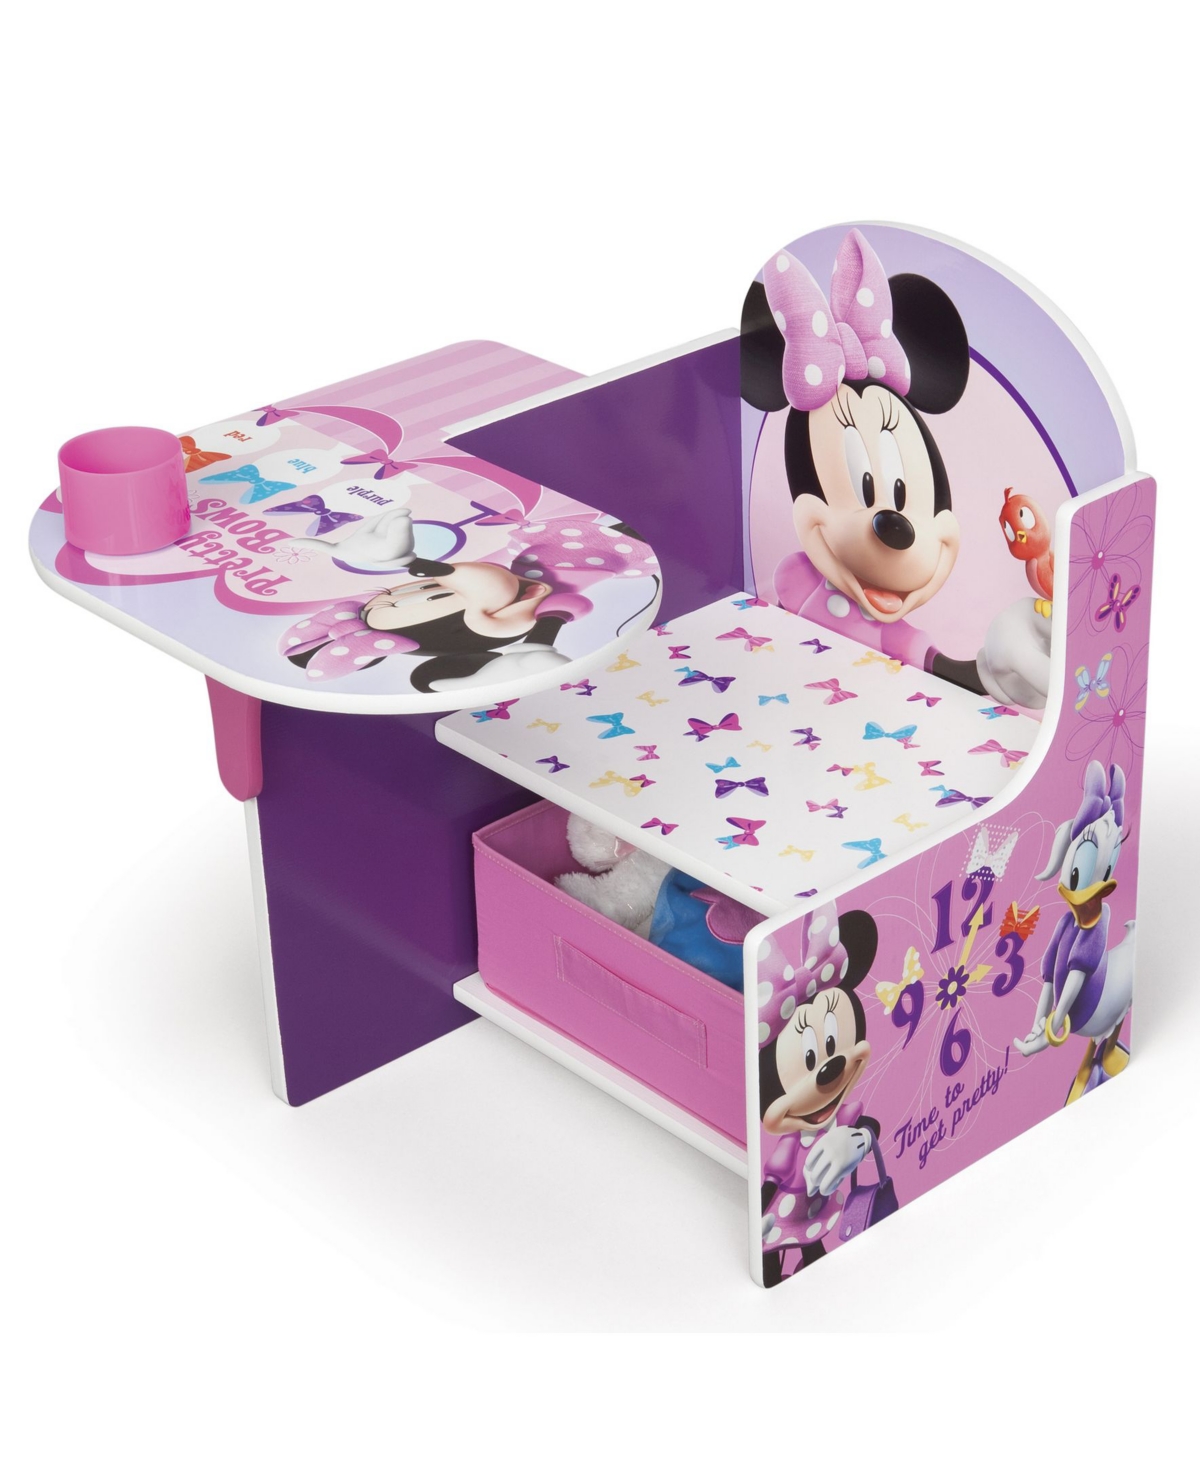 11928716 Disney Minnie Mouse Chair Desk with Storage Bin by sku 11928716